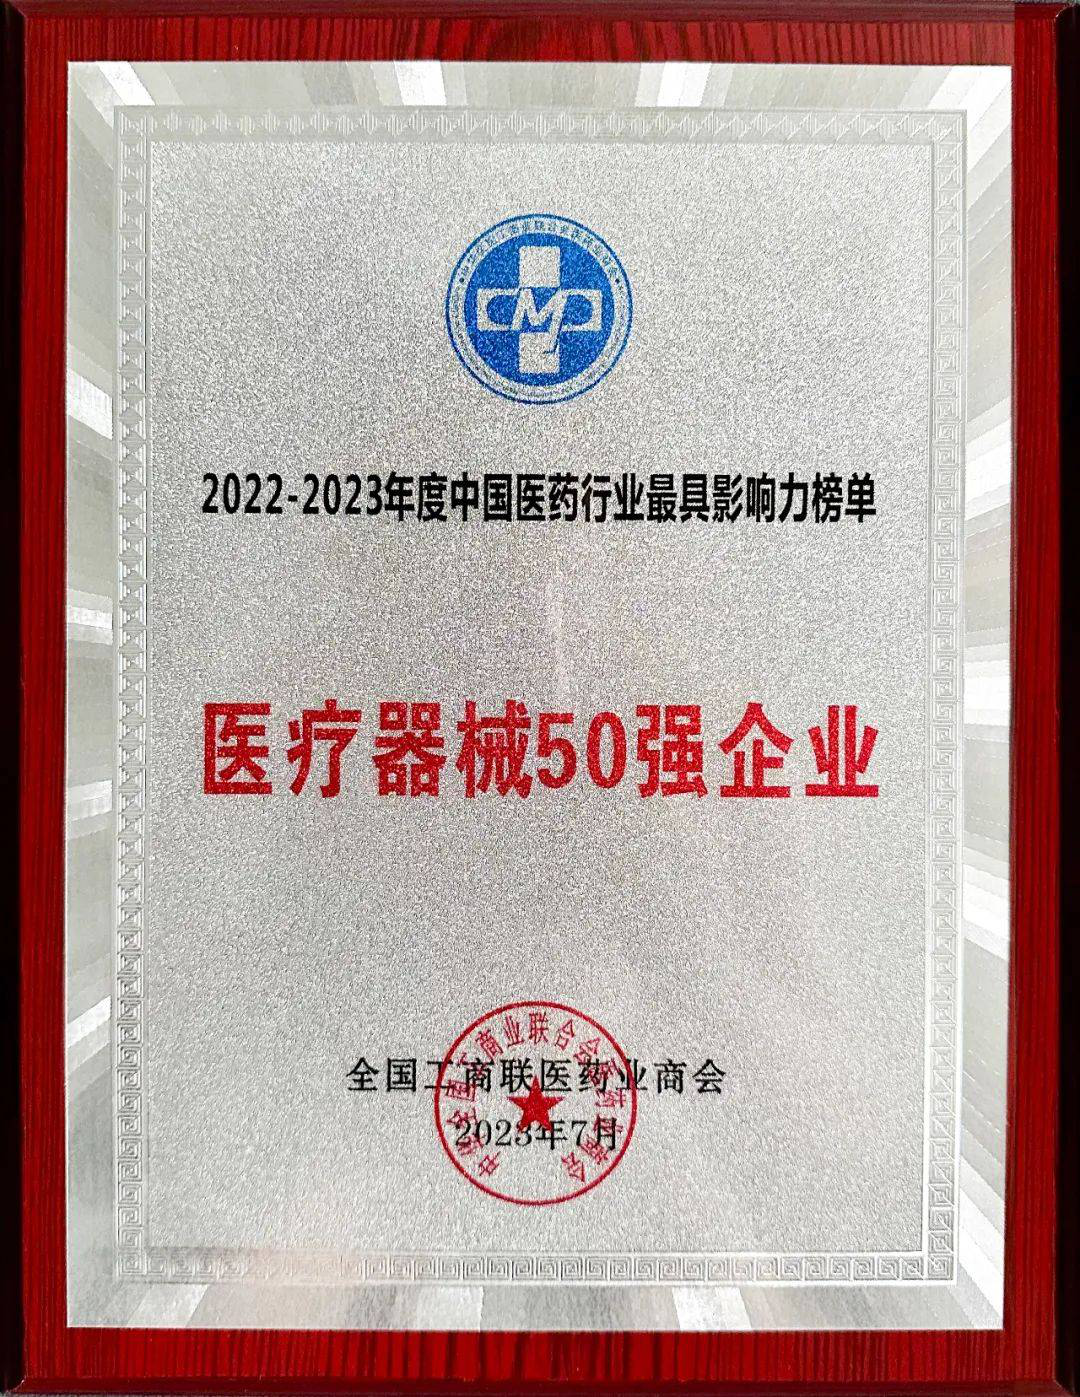 顺泽丰达荣获“2022-2023年度中国医疗器械50强企业”荣誉称号